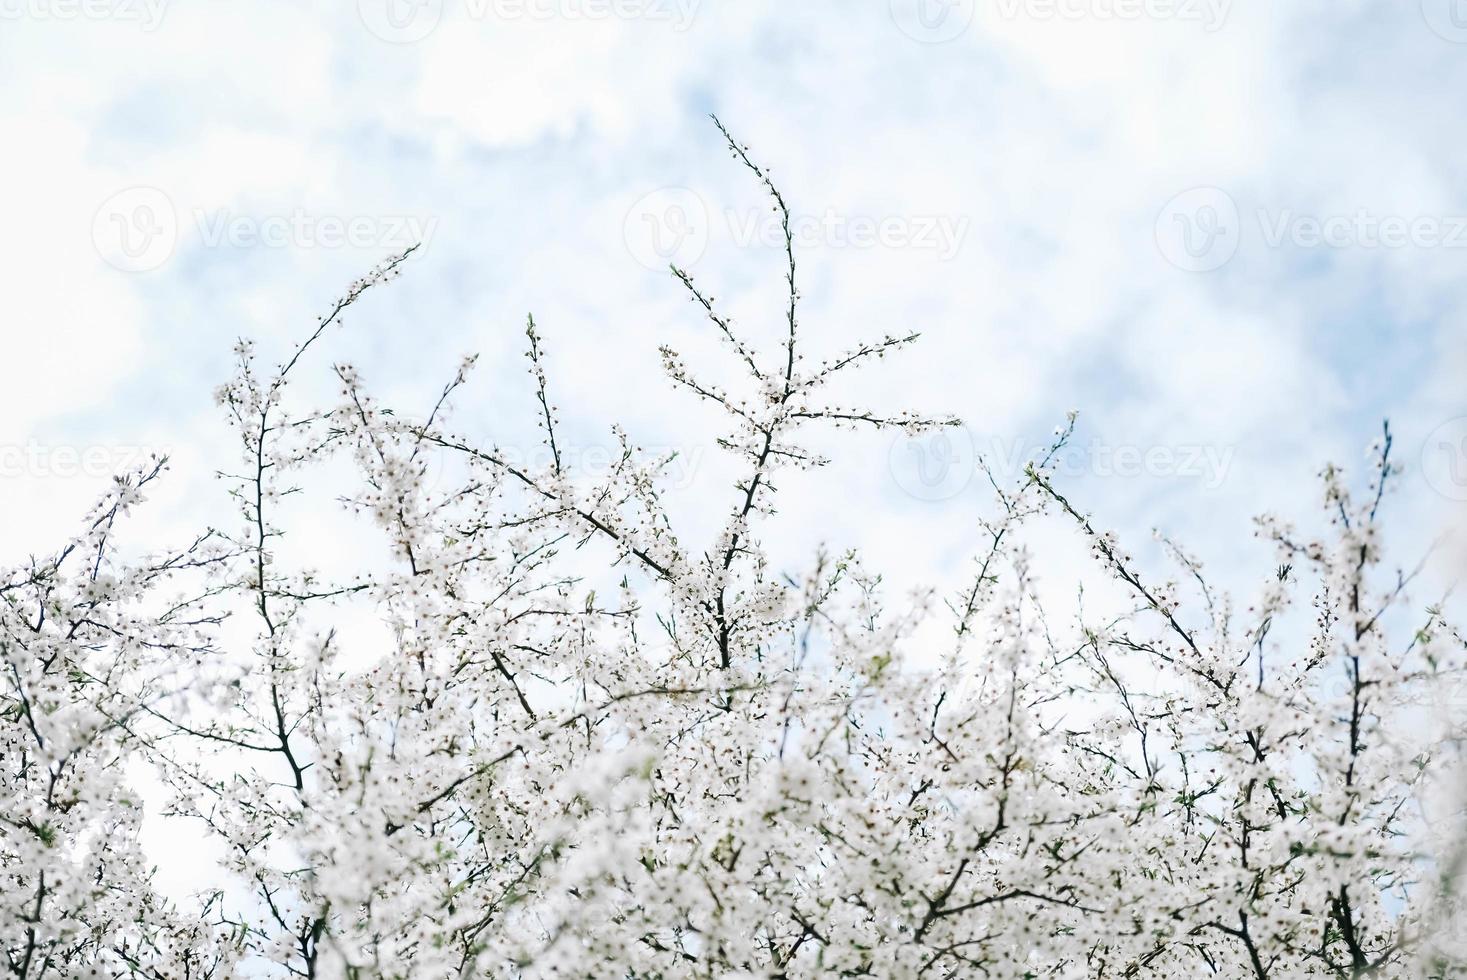 blommande träd med vita blommor i trädgården på himmel bakgrund foto